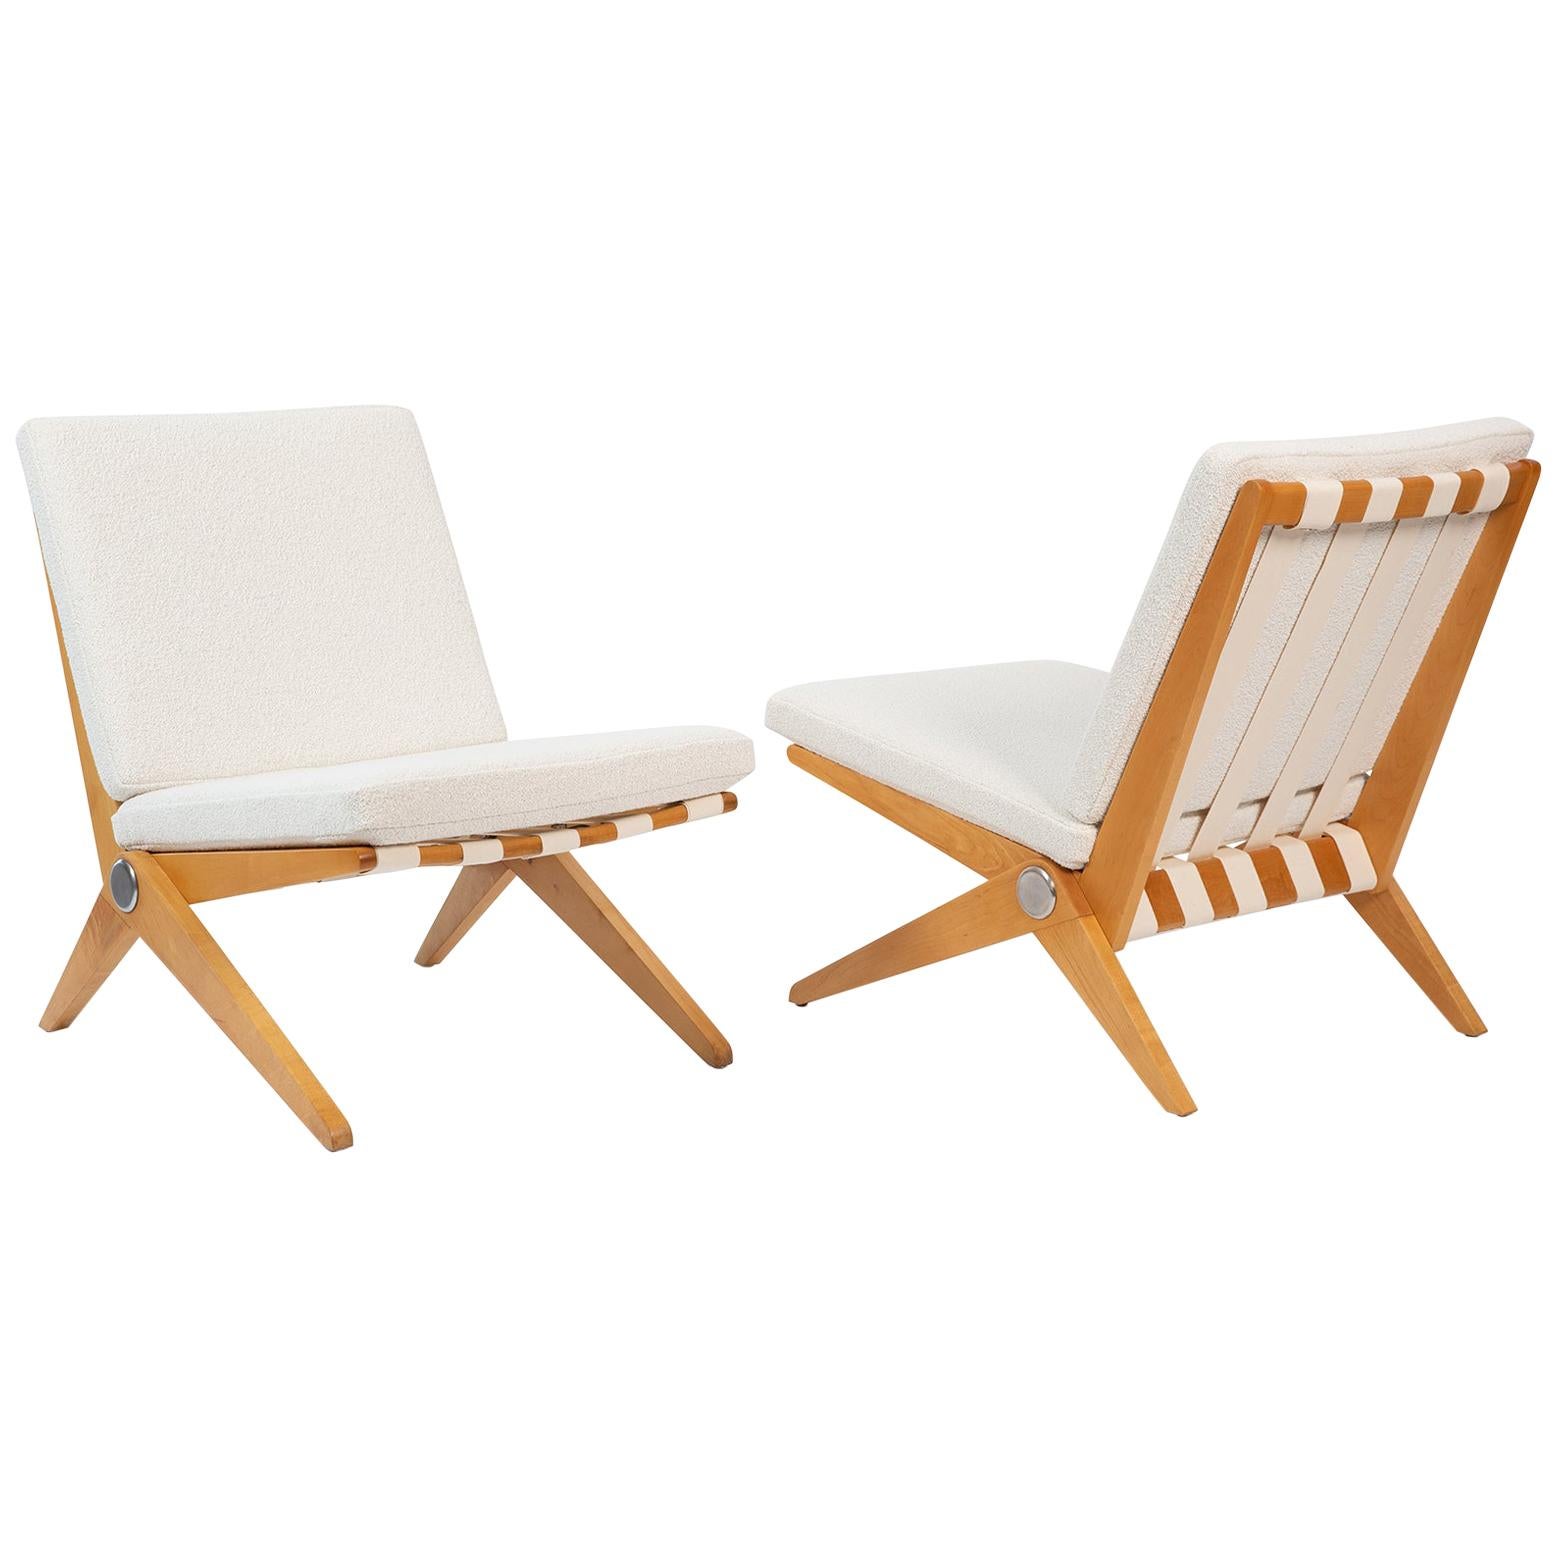 Pierre Jeanneret Knoll Scissor Chairs